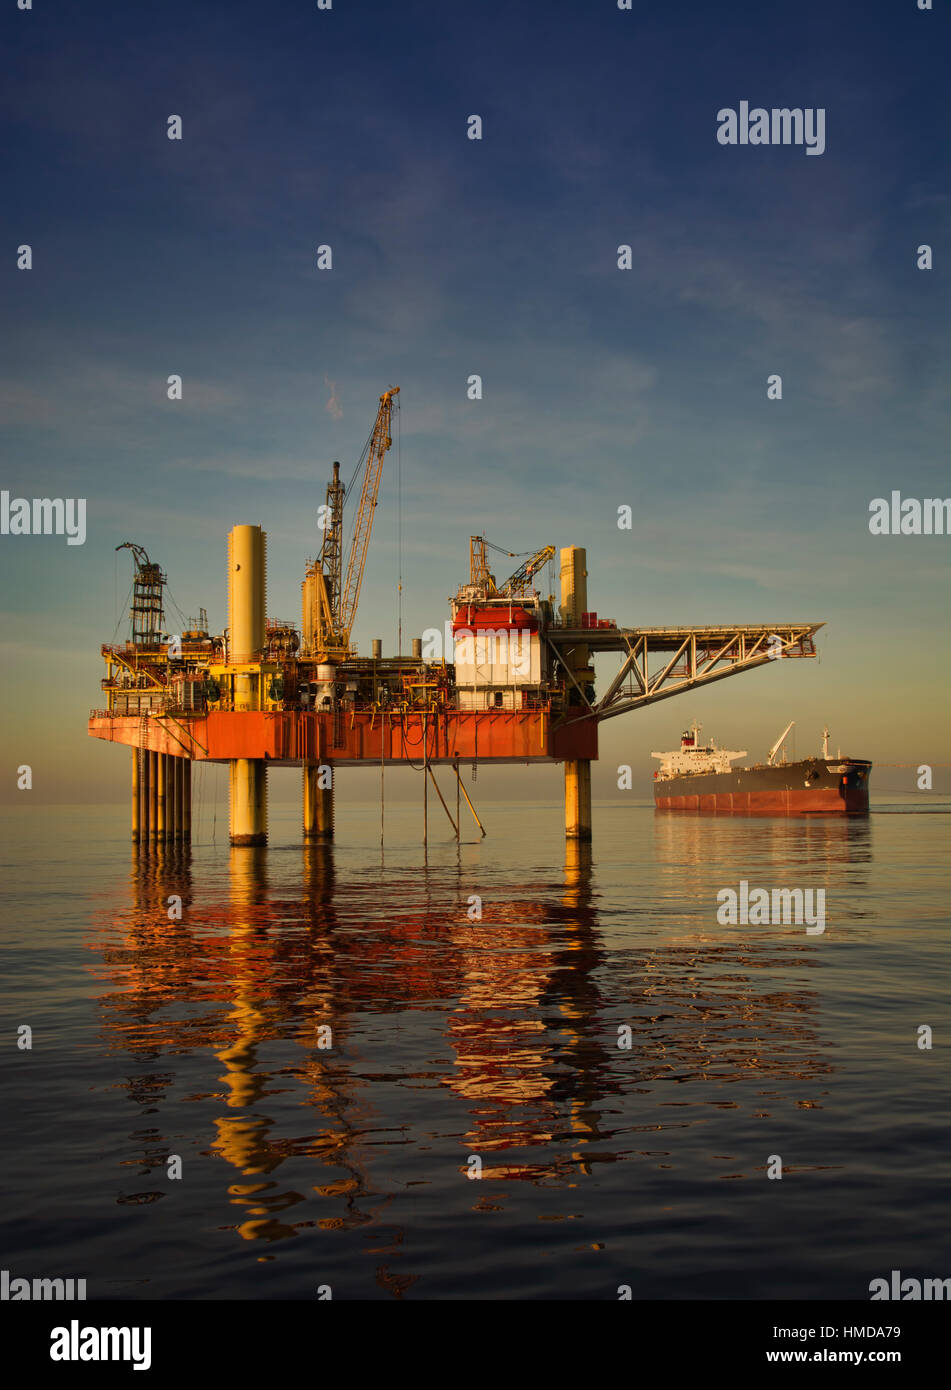 Cric l'Oil Rig et pétroliers en mer au coucher de soleil avec une mer calme et un ciel clair Banque D'Images